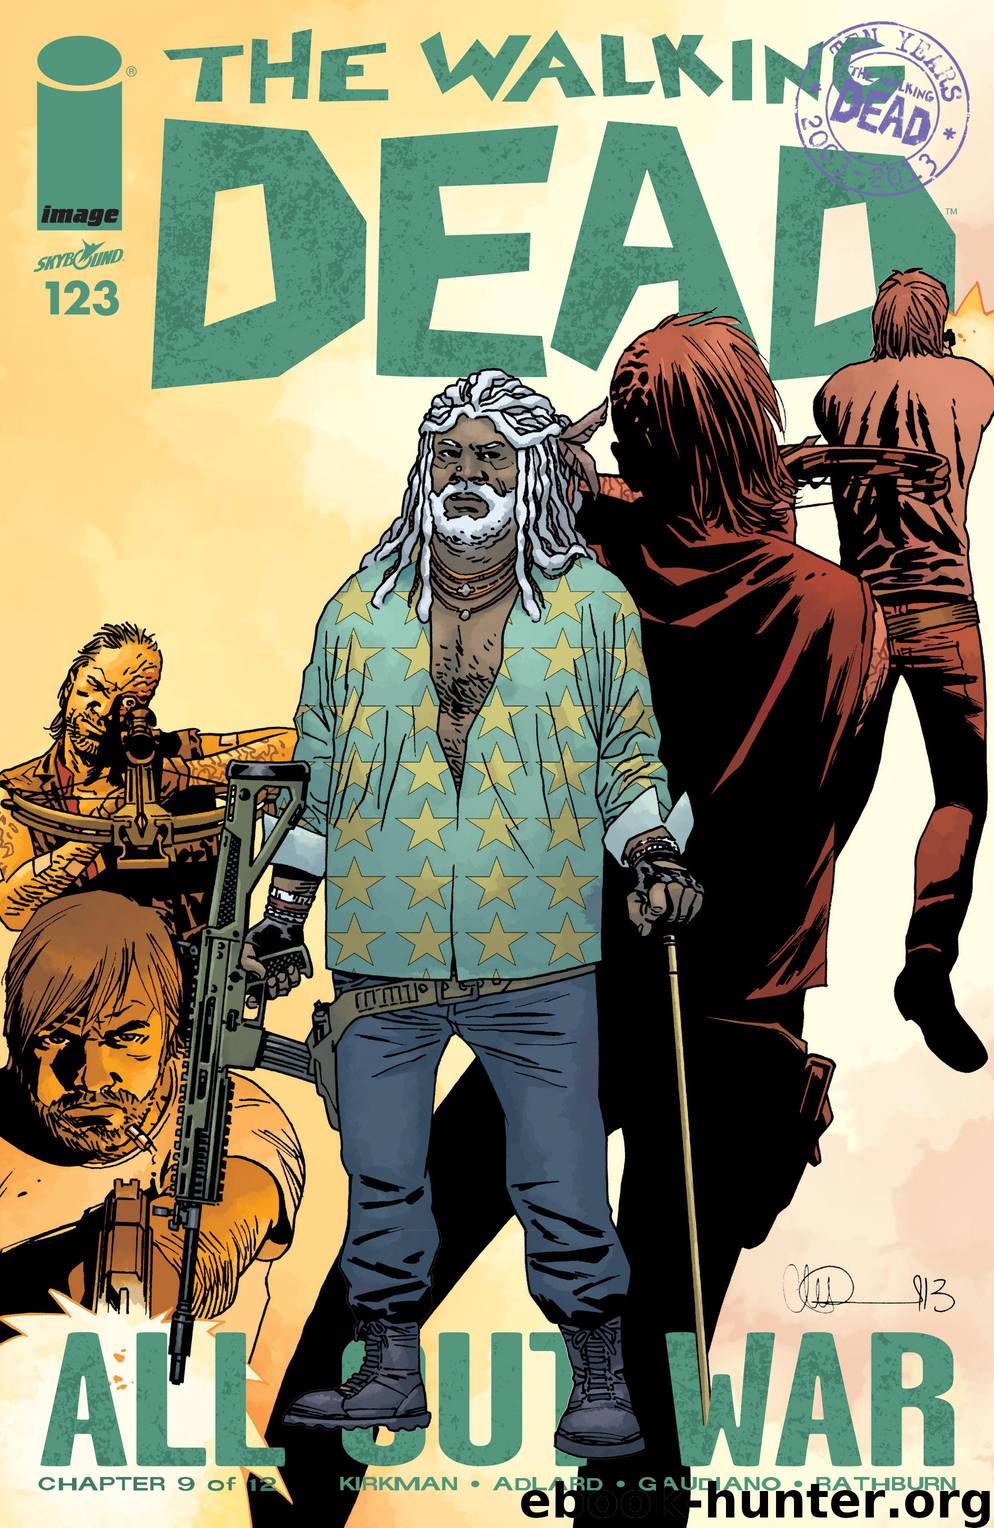 The Walking Dead 123 by Robert Kirkman